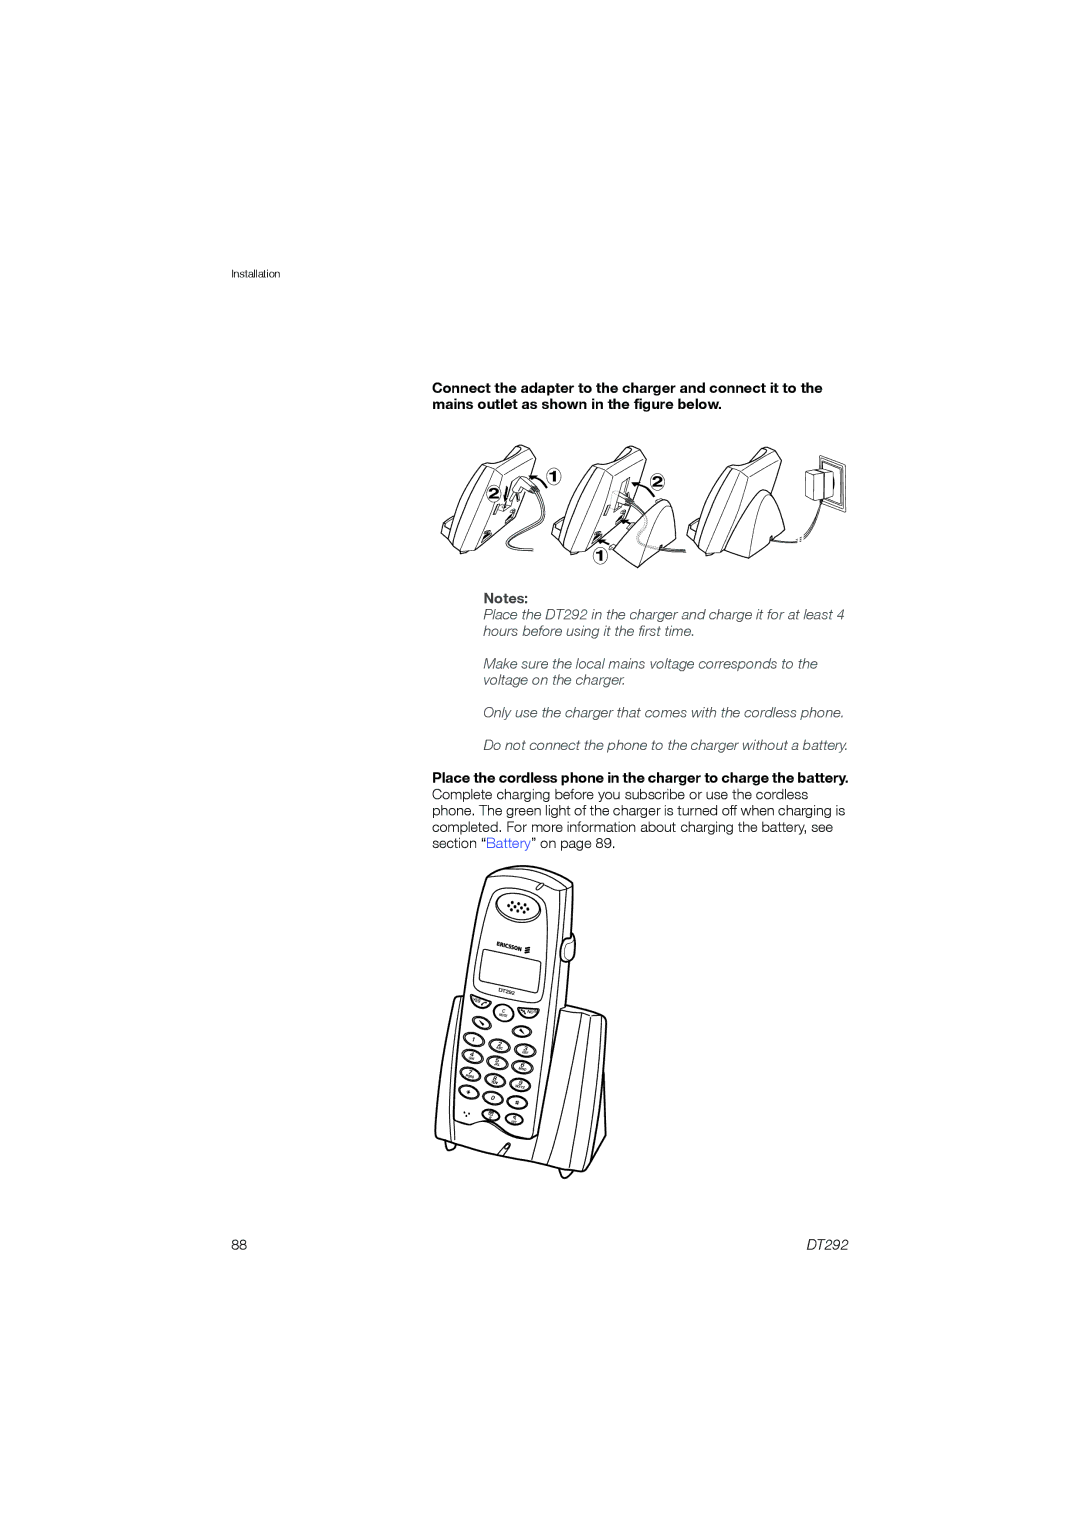 Ericsson DT292 manual 